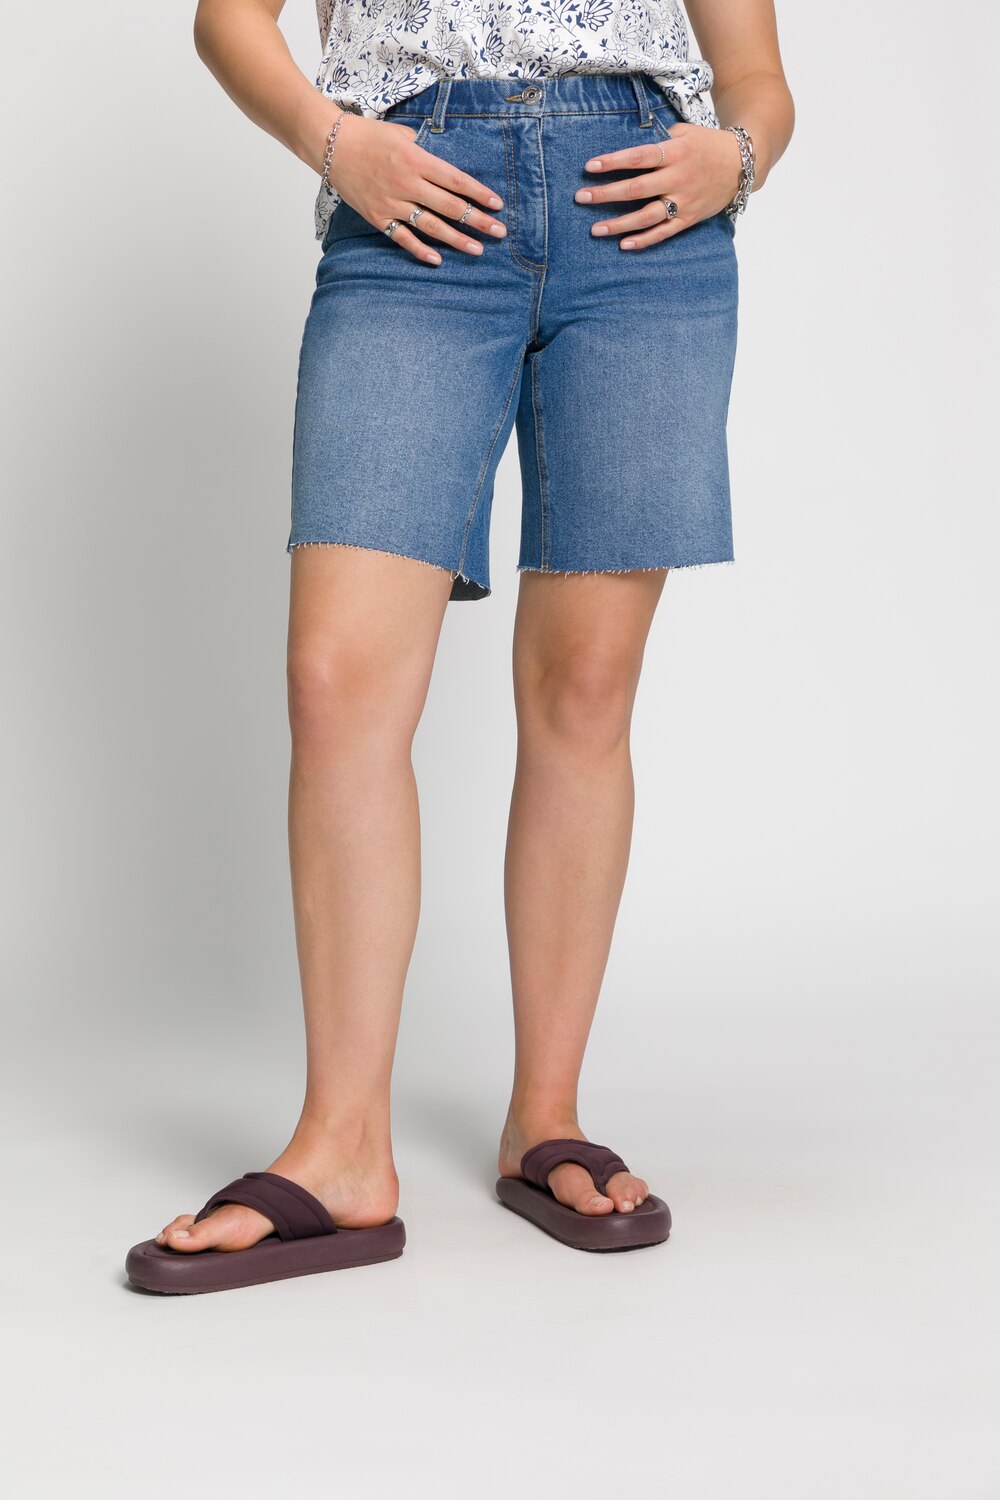 Grote Maten jeans shorts, Dames, blauw, Maat: 48, Katoen, Studio Untold